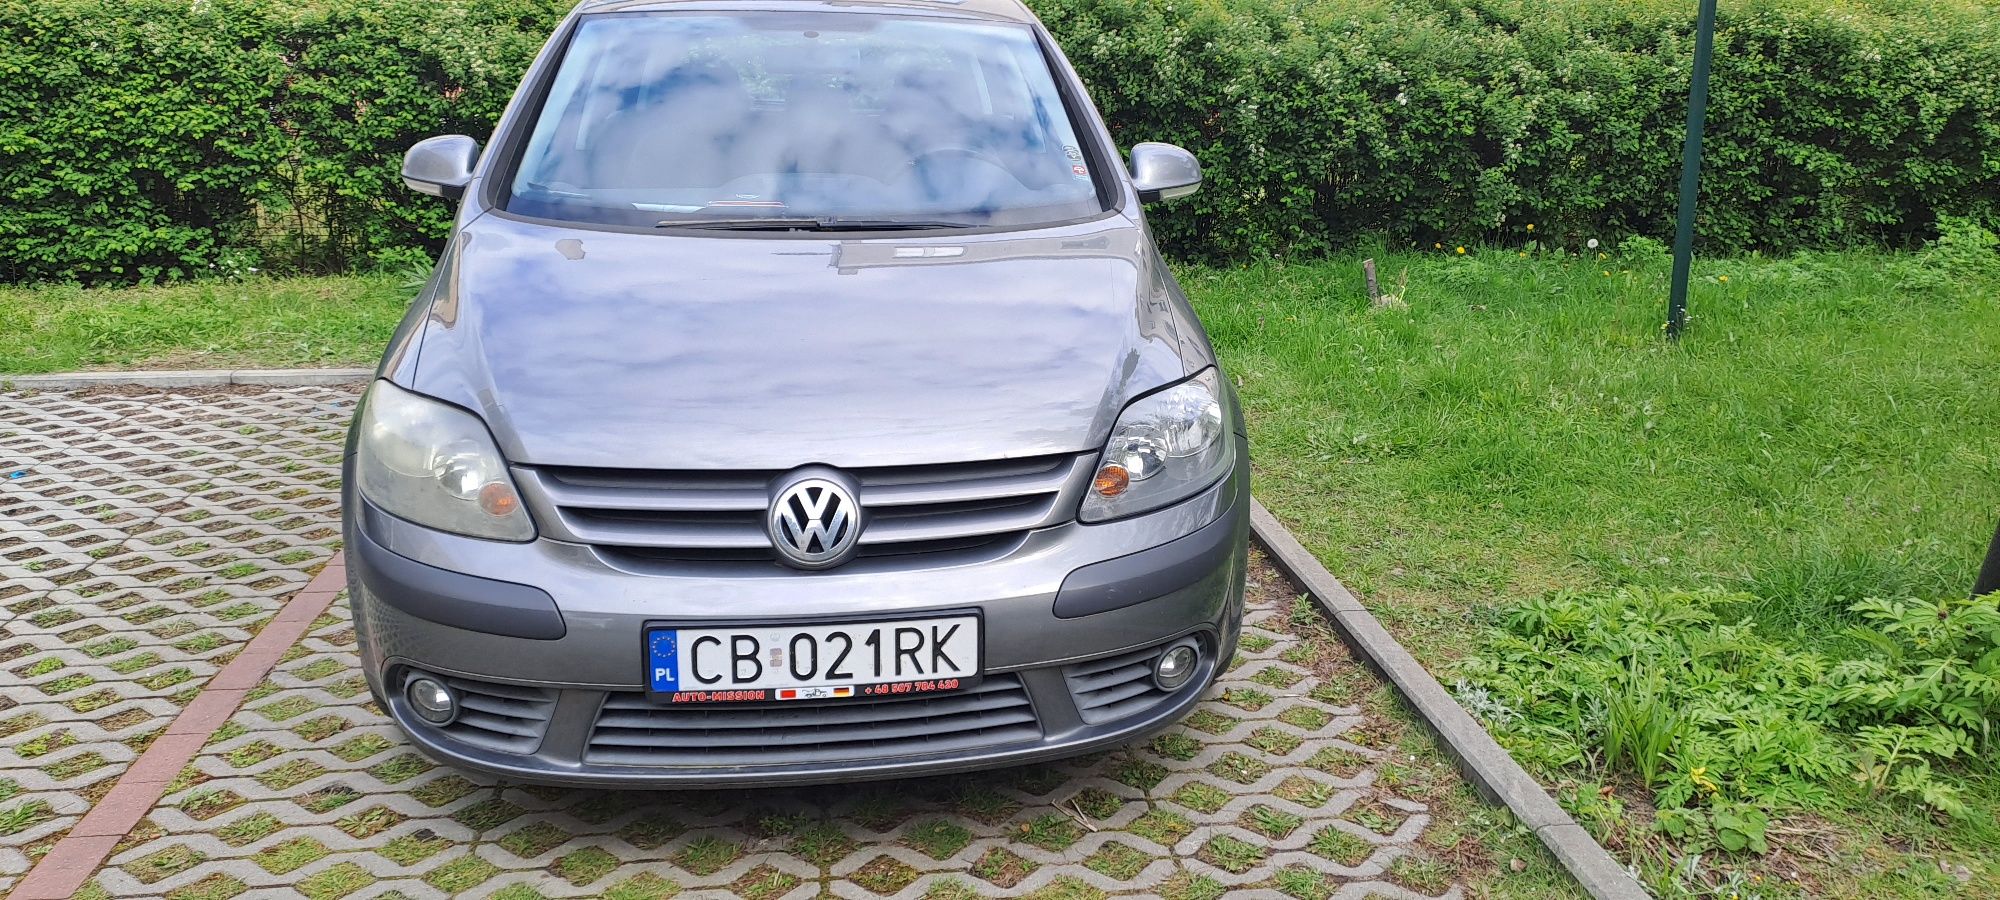 Volkswagen Golf Plus 1,6 FSI  2005 rok